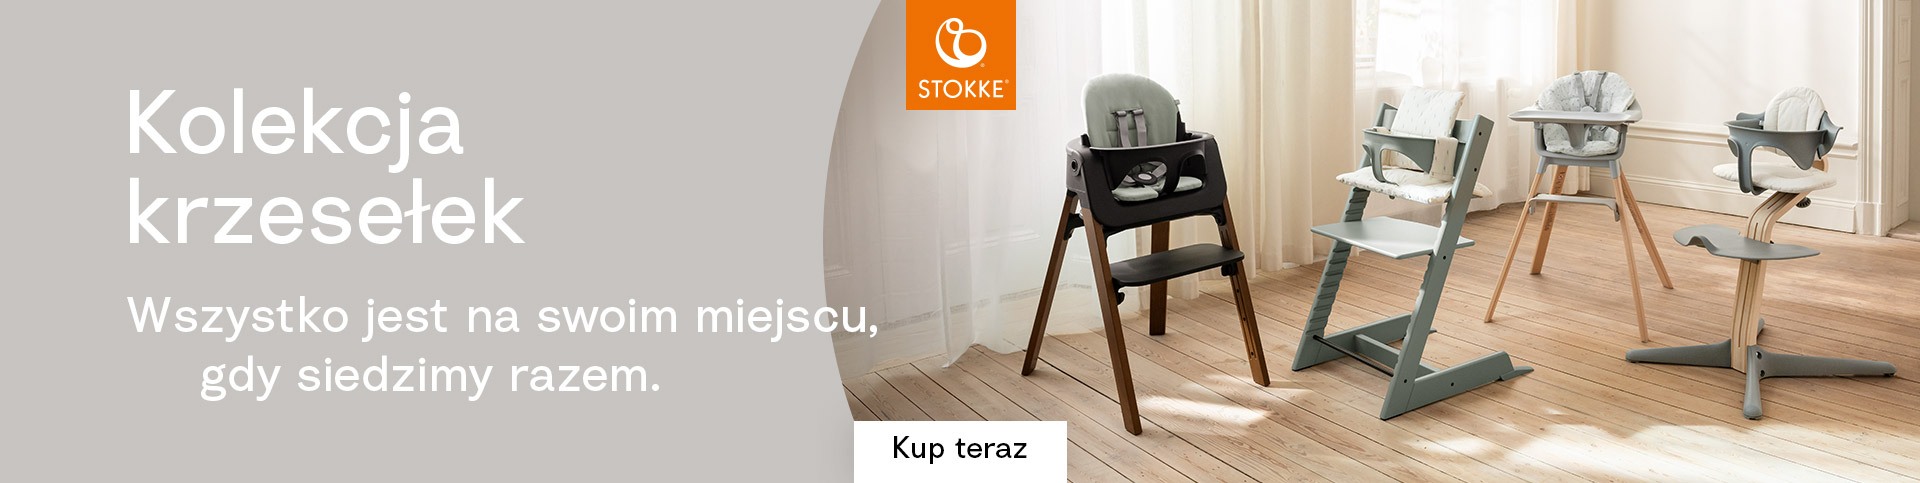 Kolekcja krzesełek Stokke